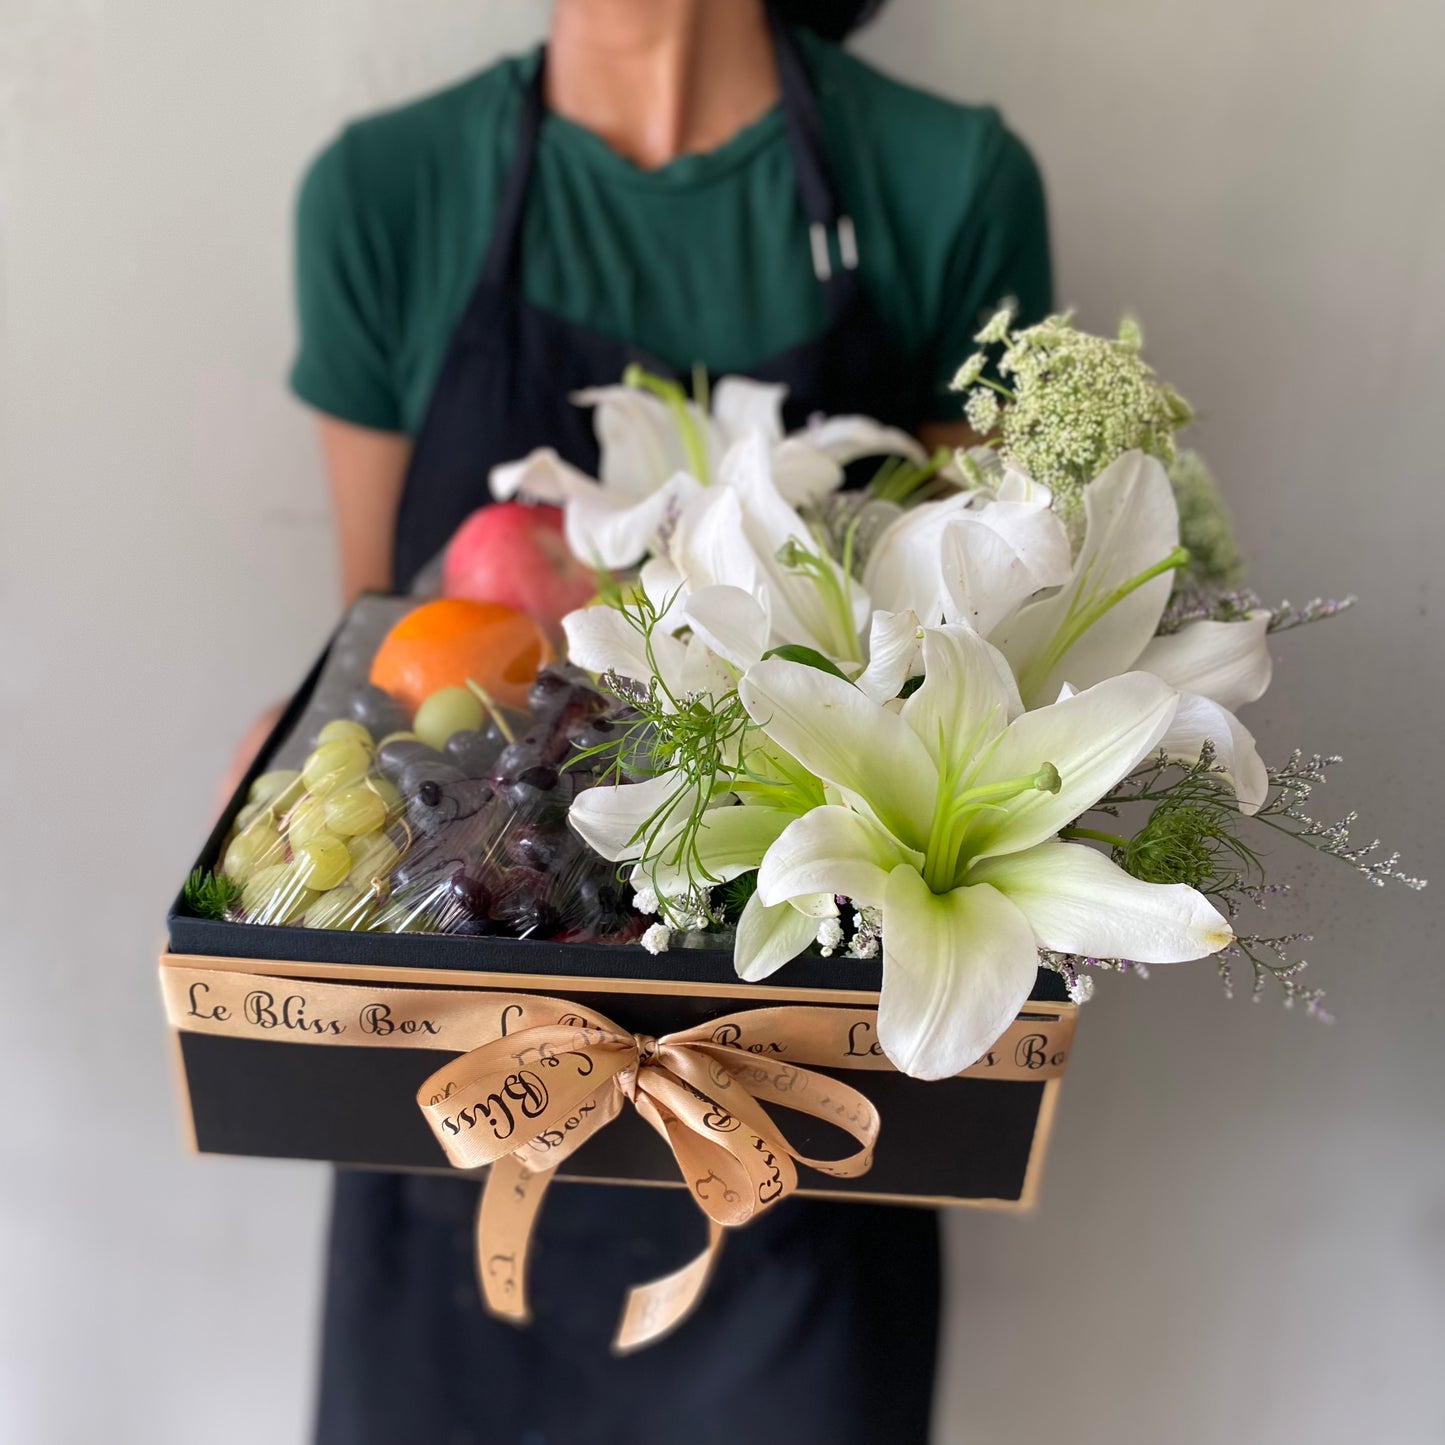 Lily Blossom Fruit Box